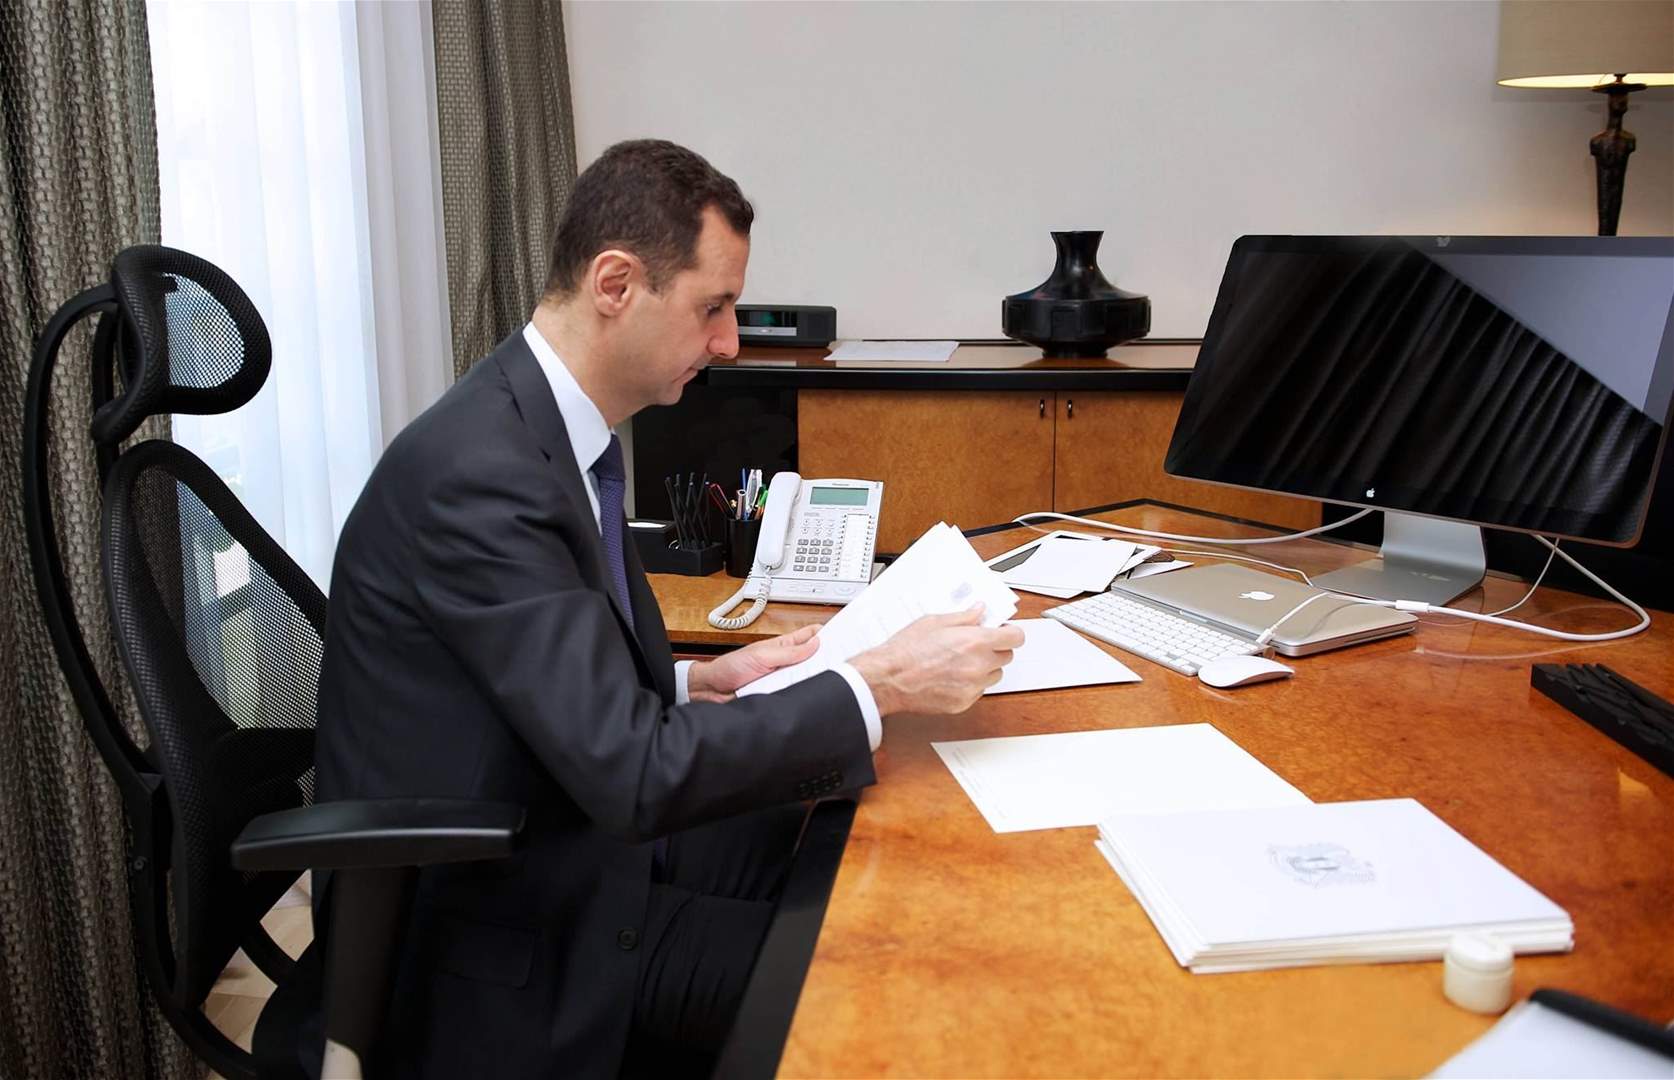 الأسد يصدر قانوناً بتعديل قانون الأحوال الشخصية في سوريا